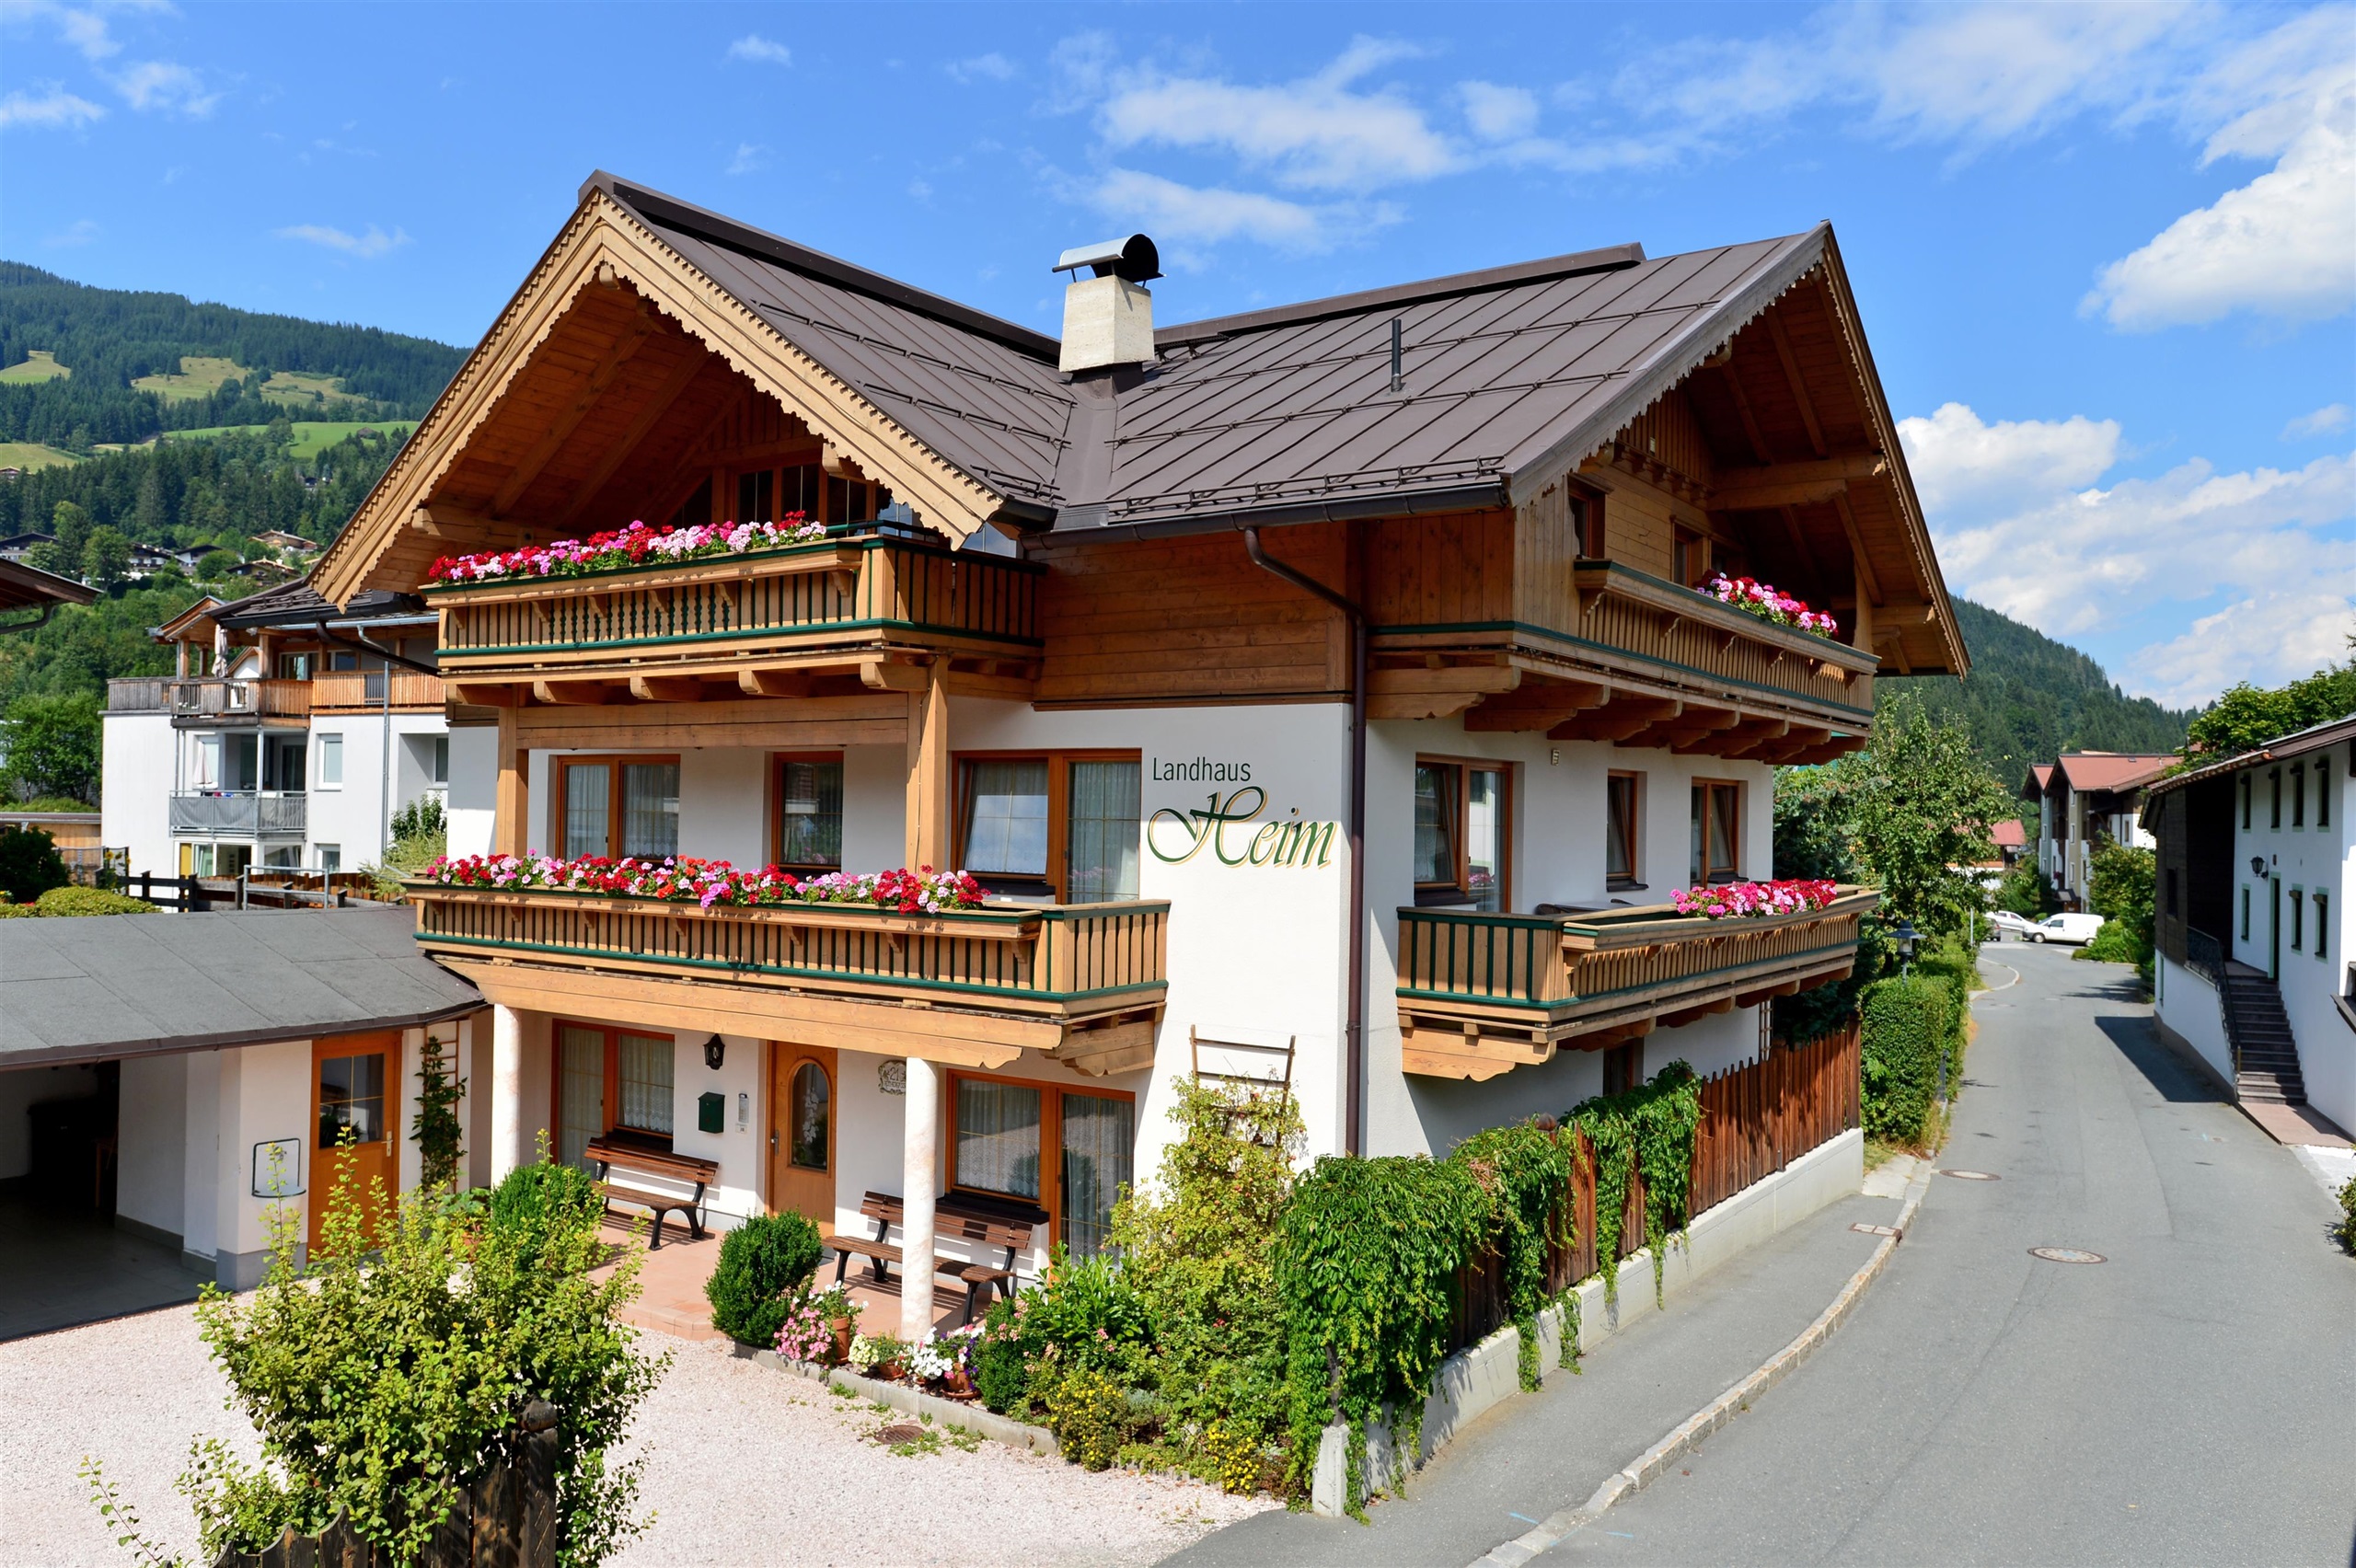 ontgrendelen voor kijk in Vakantie in de Regio Brixental - Landhaus Heim, Kirchberg in Tirol